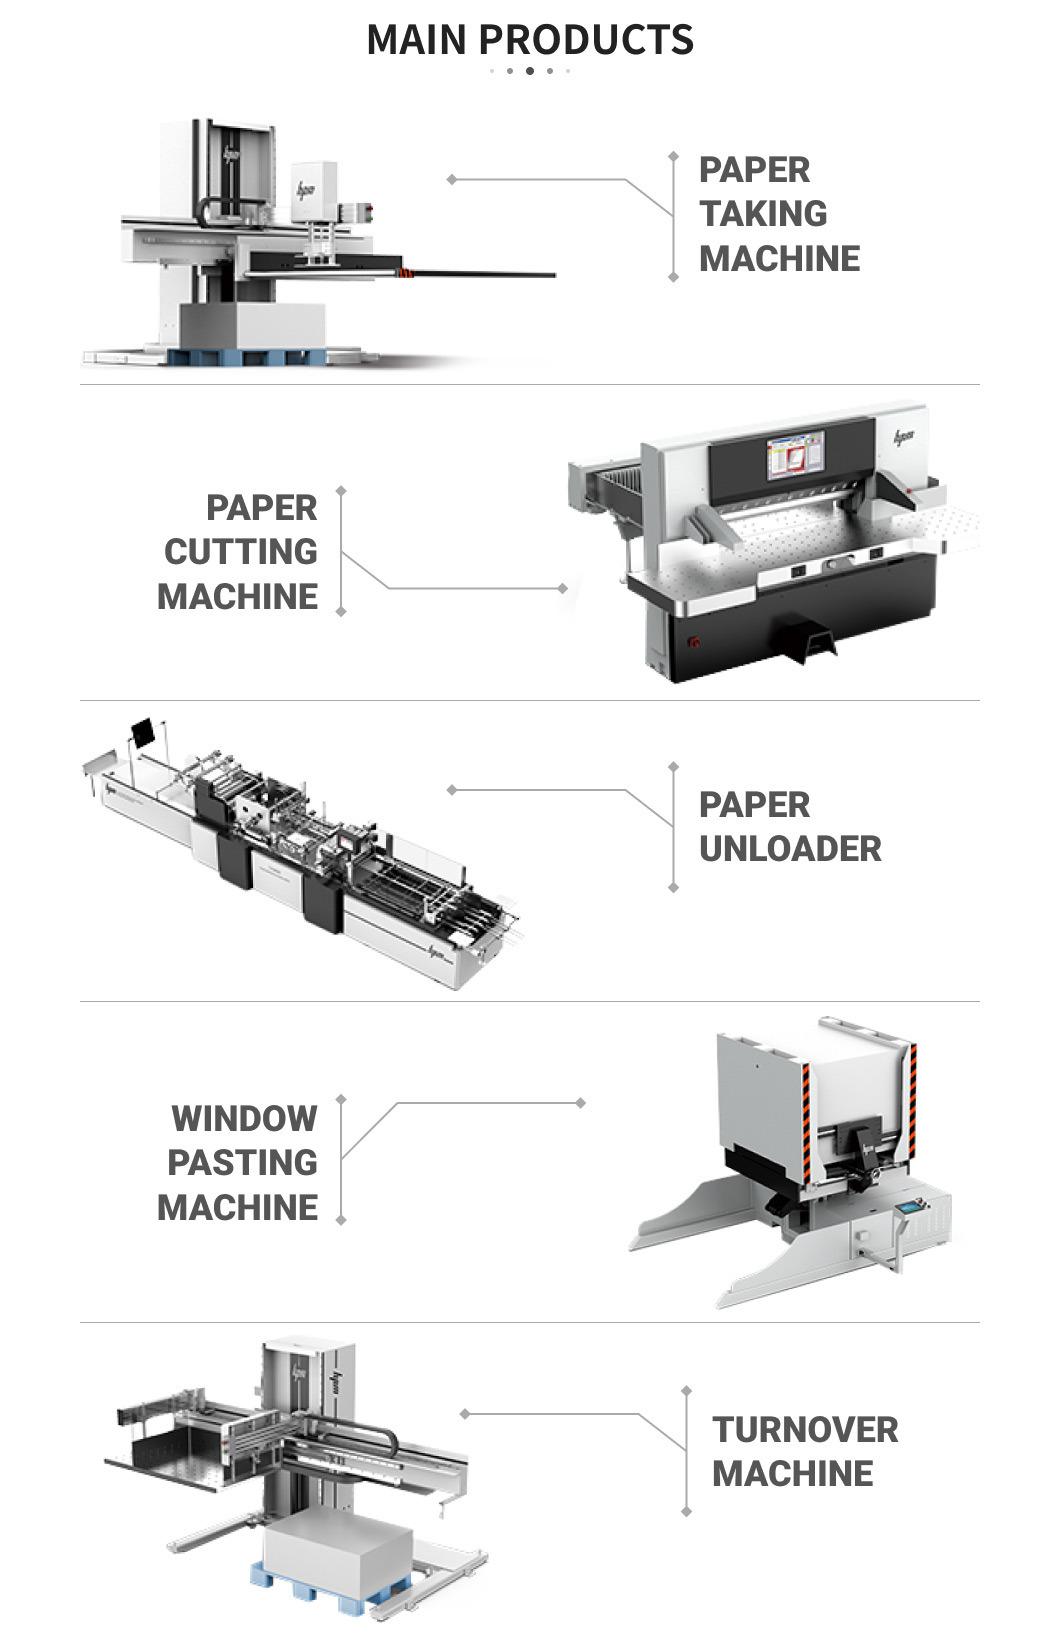 Post-Press Equipment: Paper Cutter